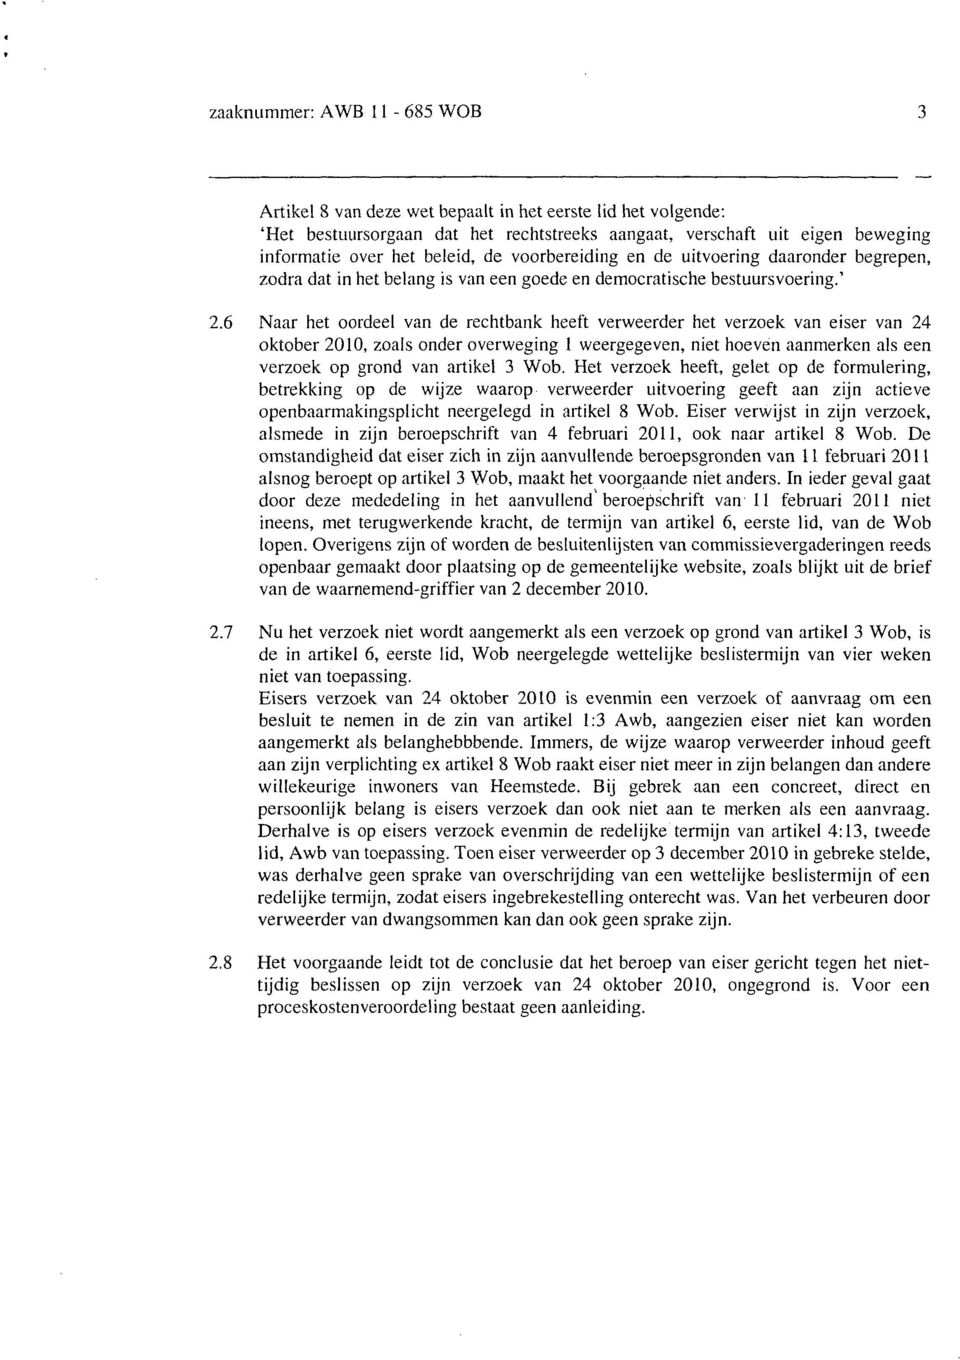 6 Naar het oordeel van de rechtbank heeft verweerder het verzoek van eiser van 24 oktober 2010, zoals onder overweging 1 weergegeven, niet hoeven aanmerken als een verzoek op grond van artikel 3 Wob.